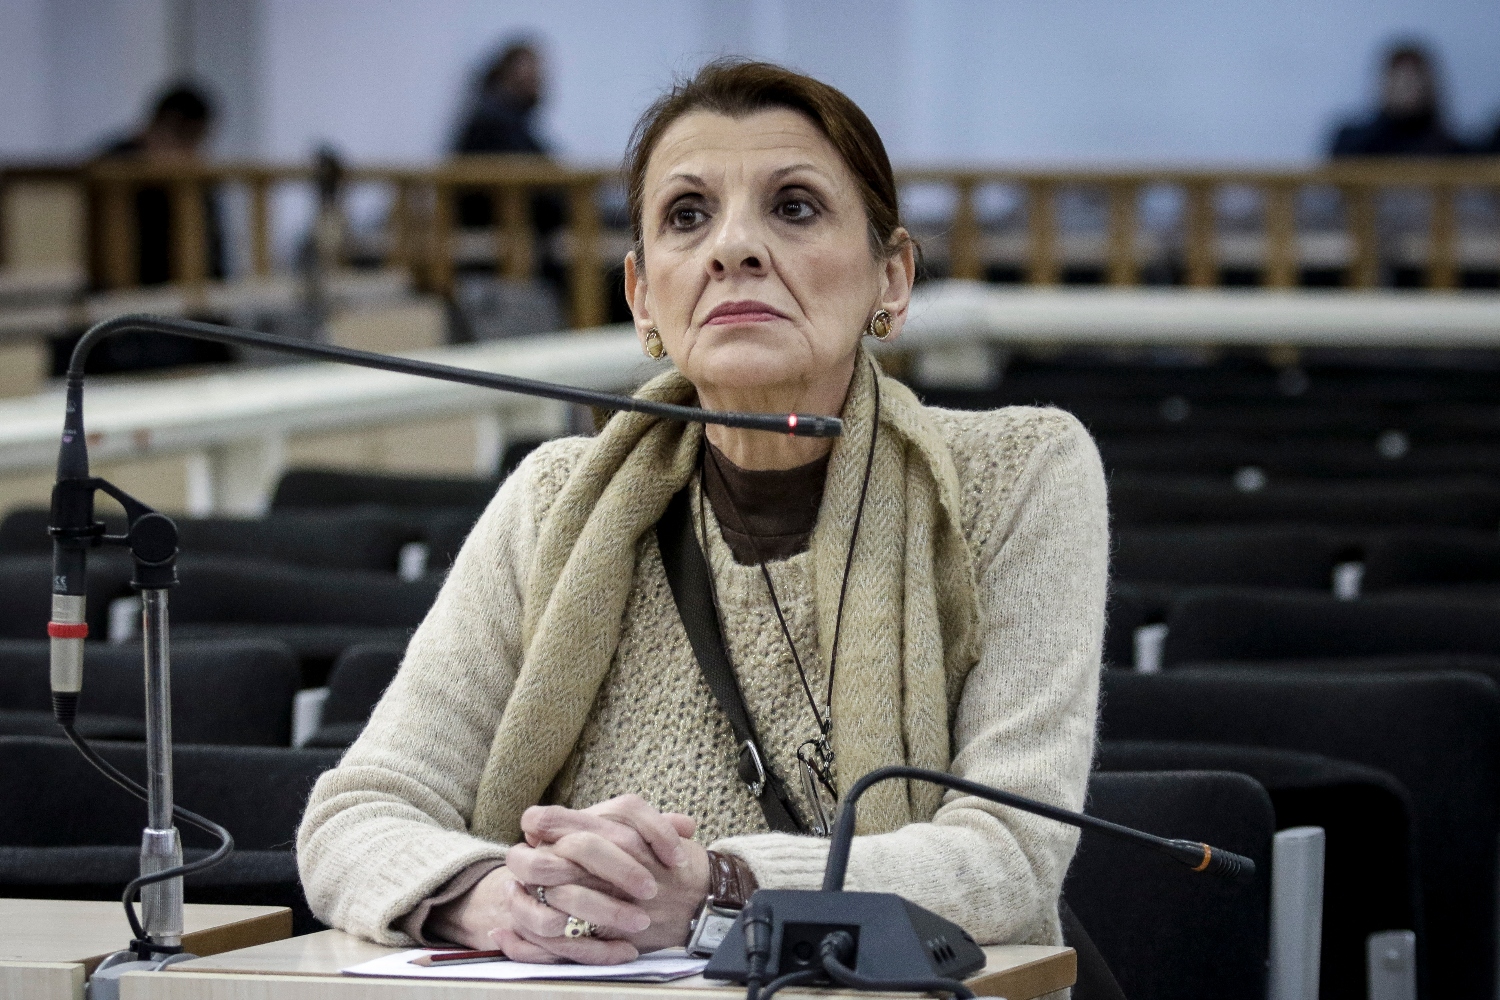 Μαρία Κανελλοπούλου: Ύβρις & βέβηλο να μιλάει κανείς έτσι για τον Μάνο Χατζιδάκι